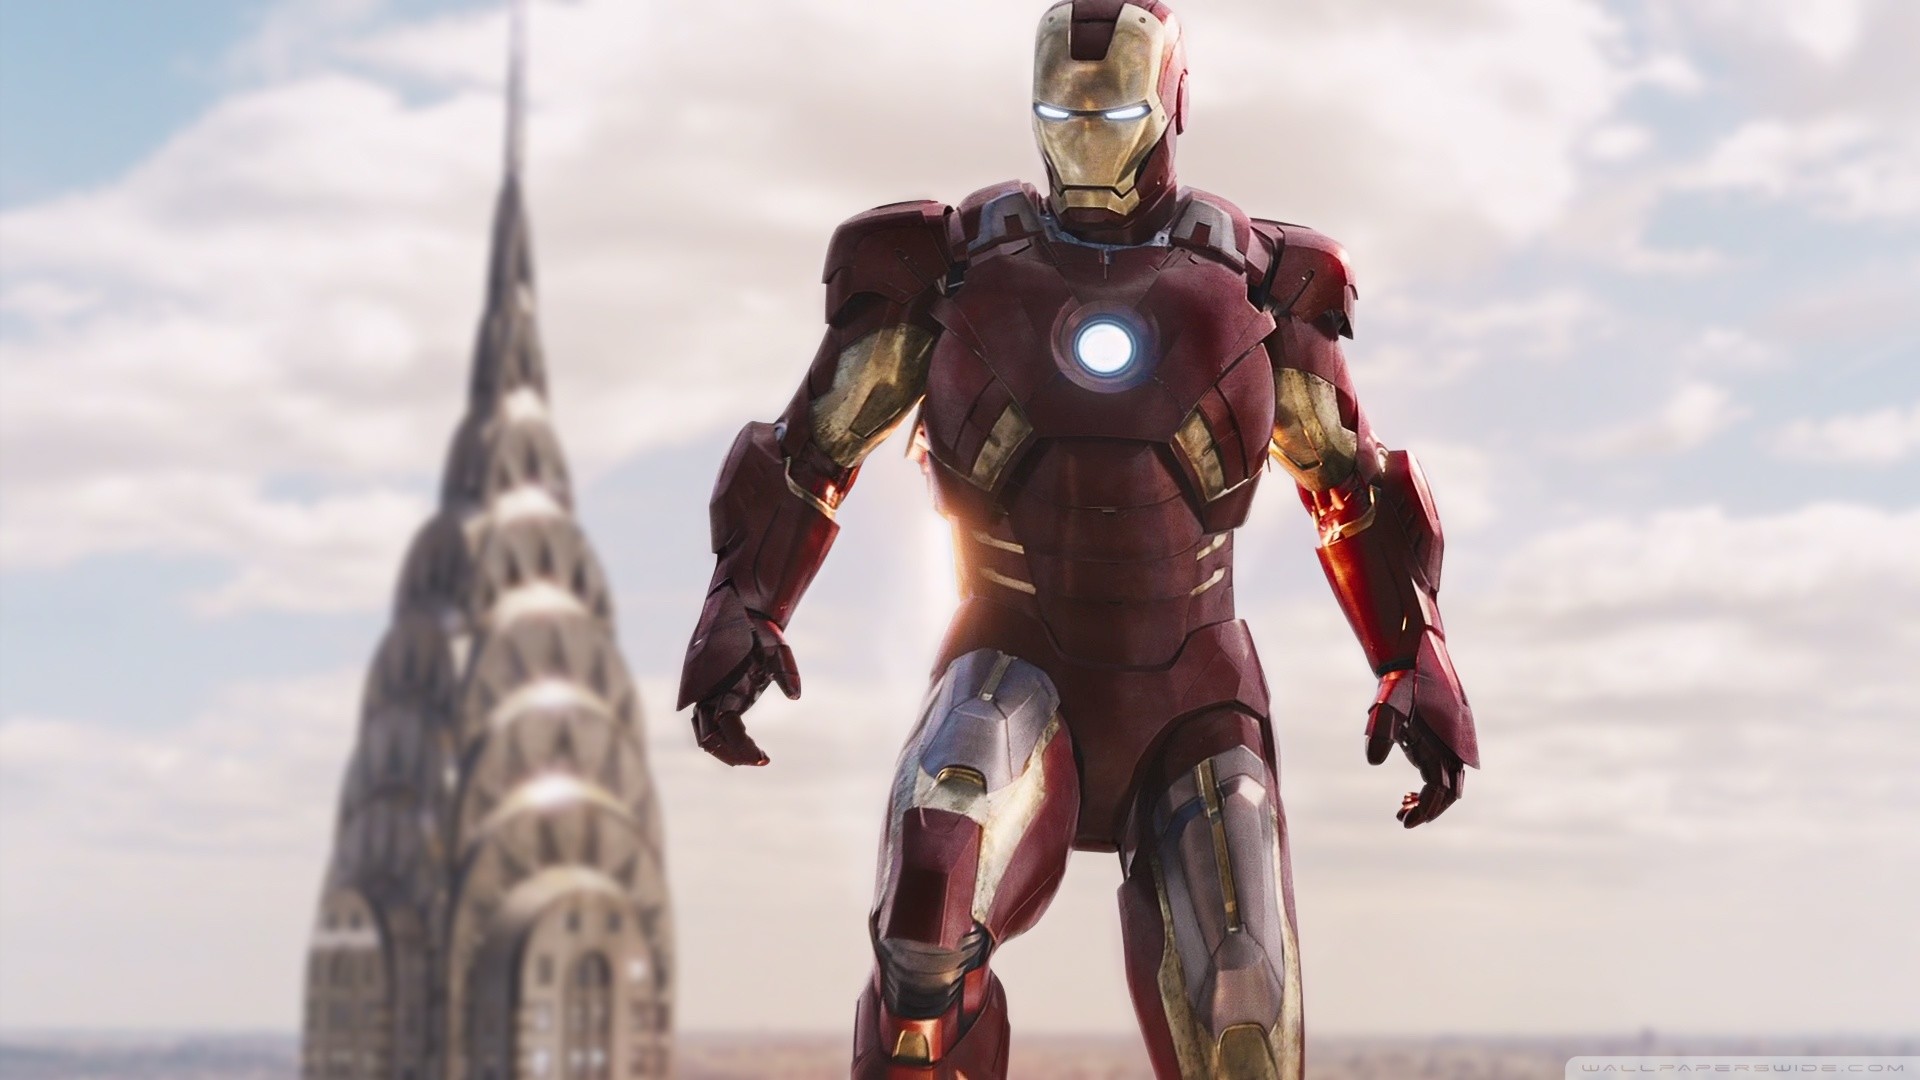 Ironman-MARK07-Avengers HD Wide Wallpaper for Widescreen